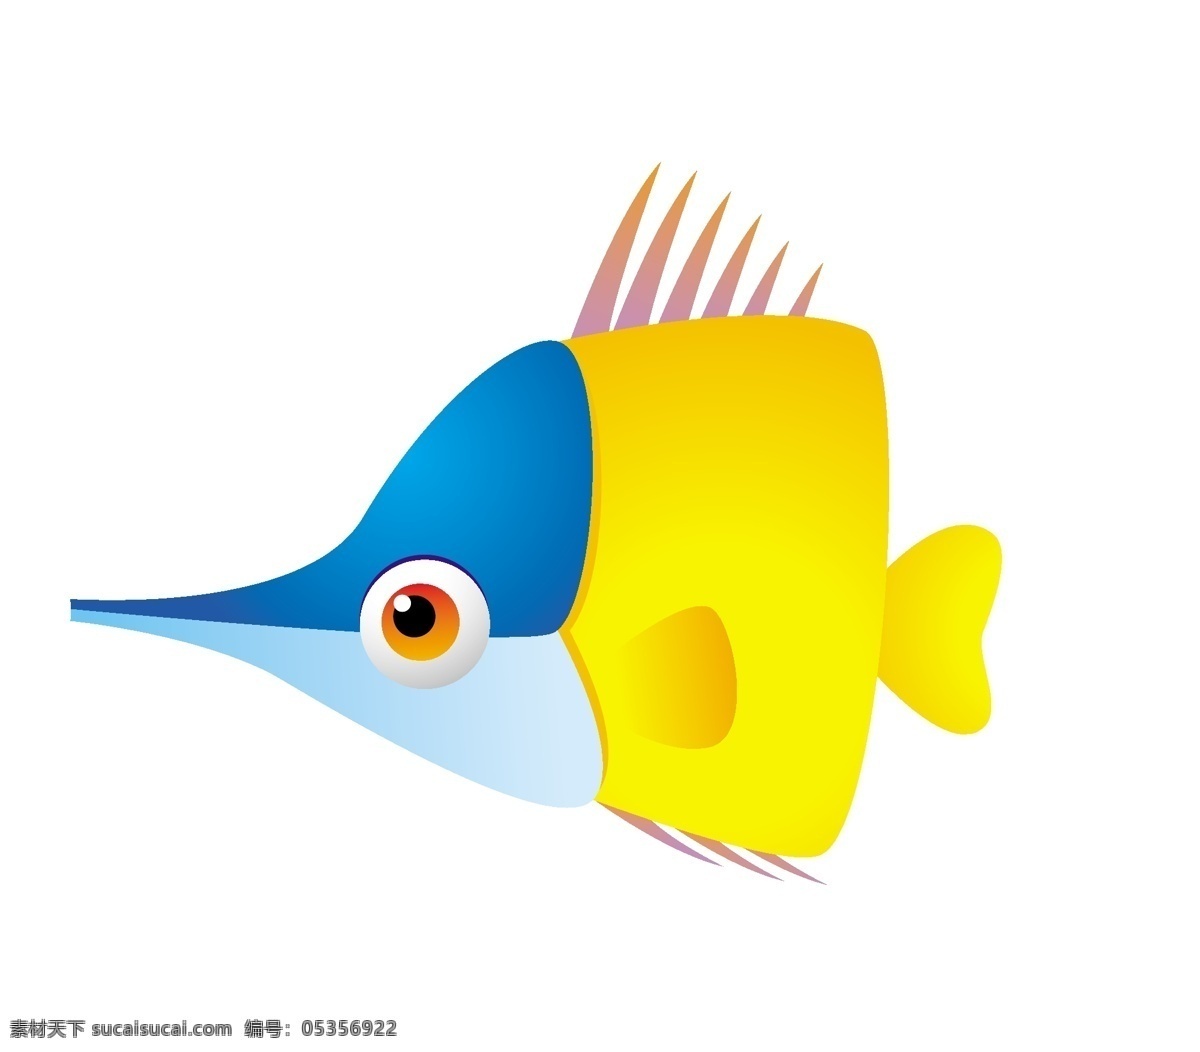 矢量 卡通 小黄 金鱼 动物 模板 素材图片 矢量动物 卡通动物